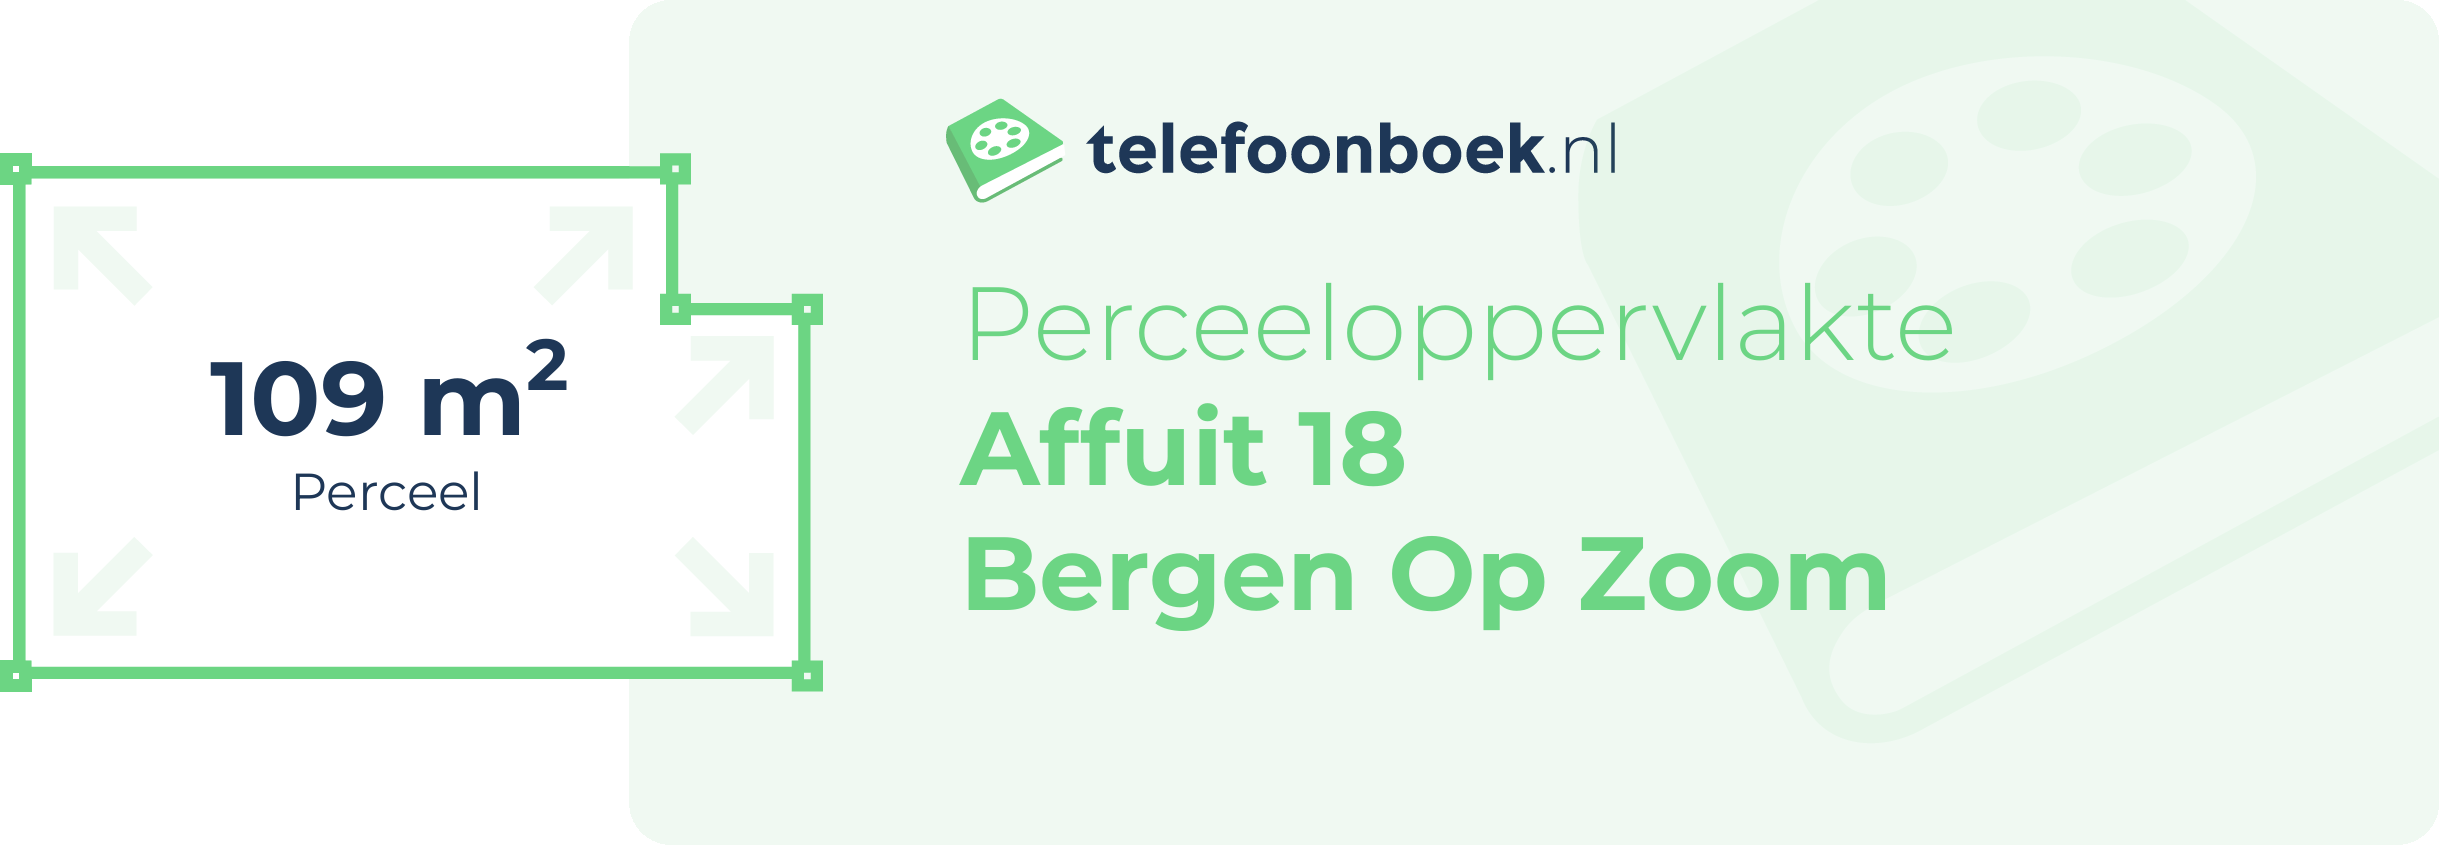 Perceeloppervlakte Affuit 18 Bergen Op Zoom